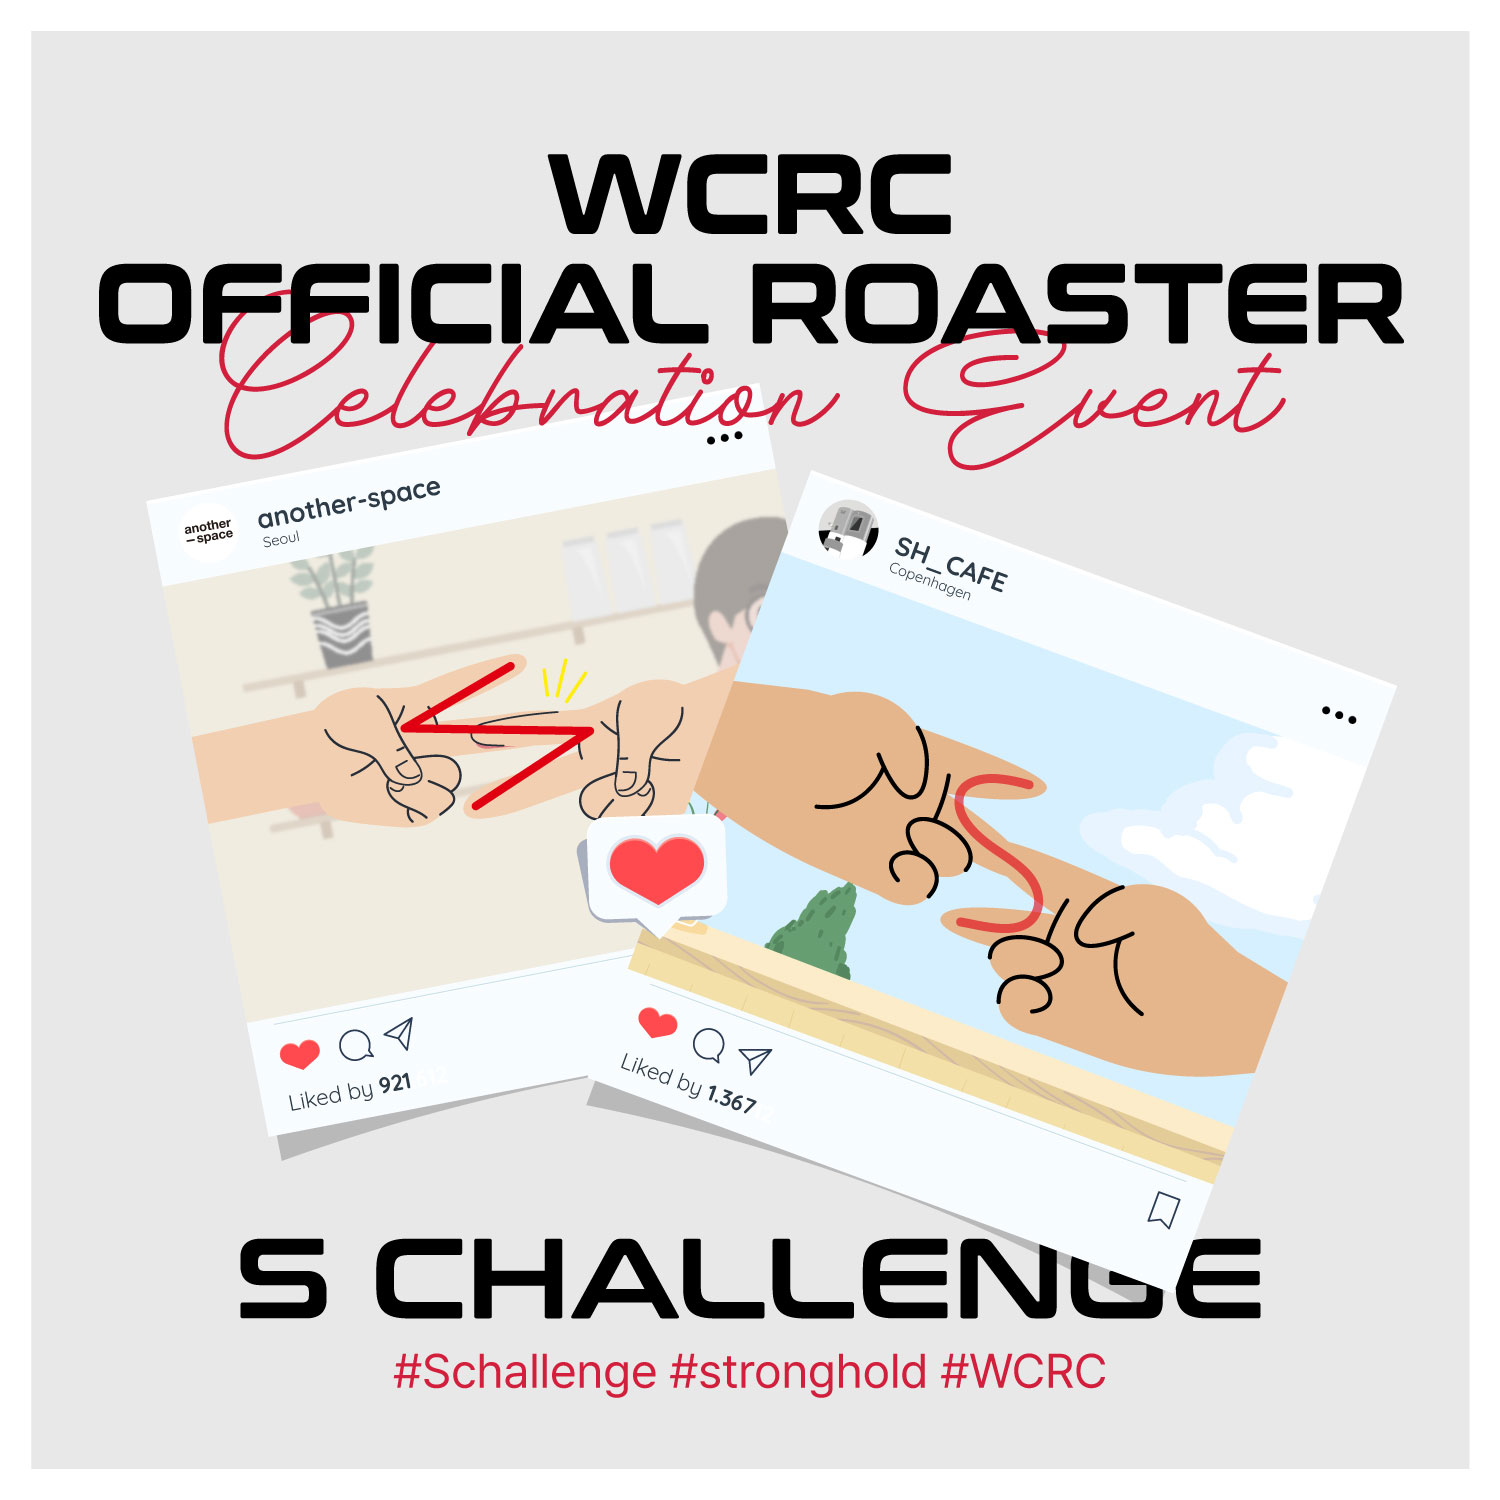 스트롱홀드 WCRC 공식 로스터기 선정, S챌린지 이벤트